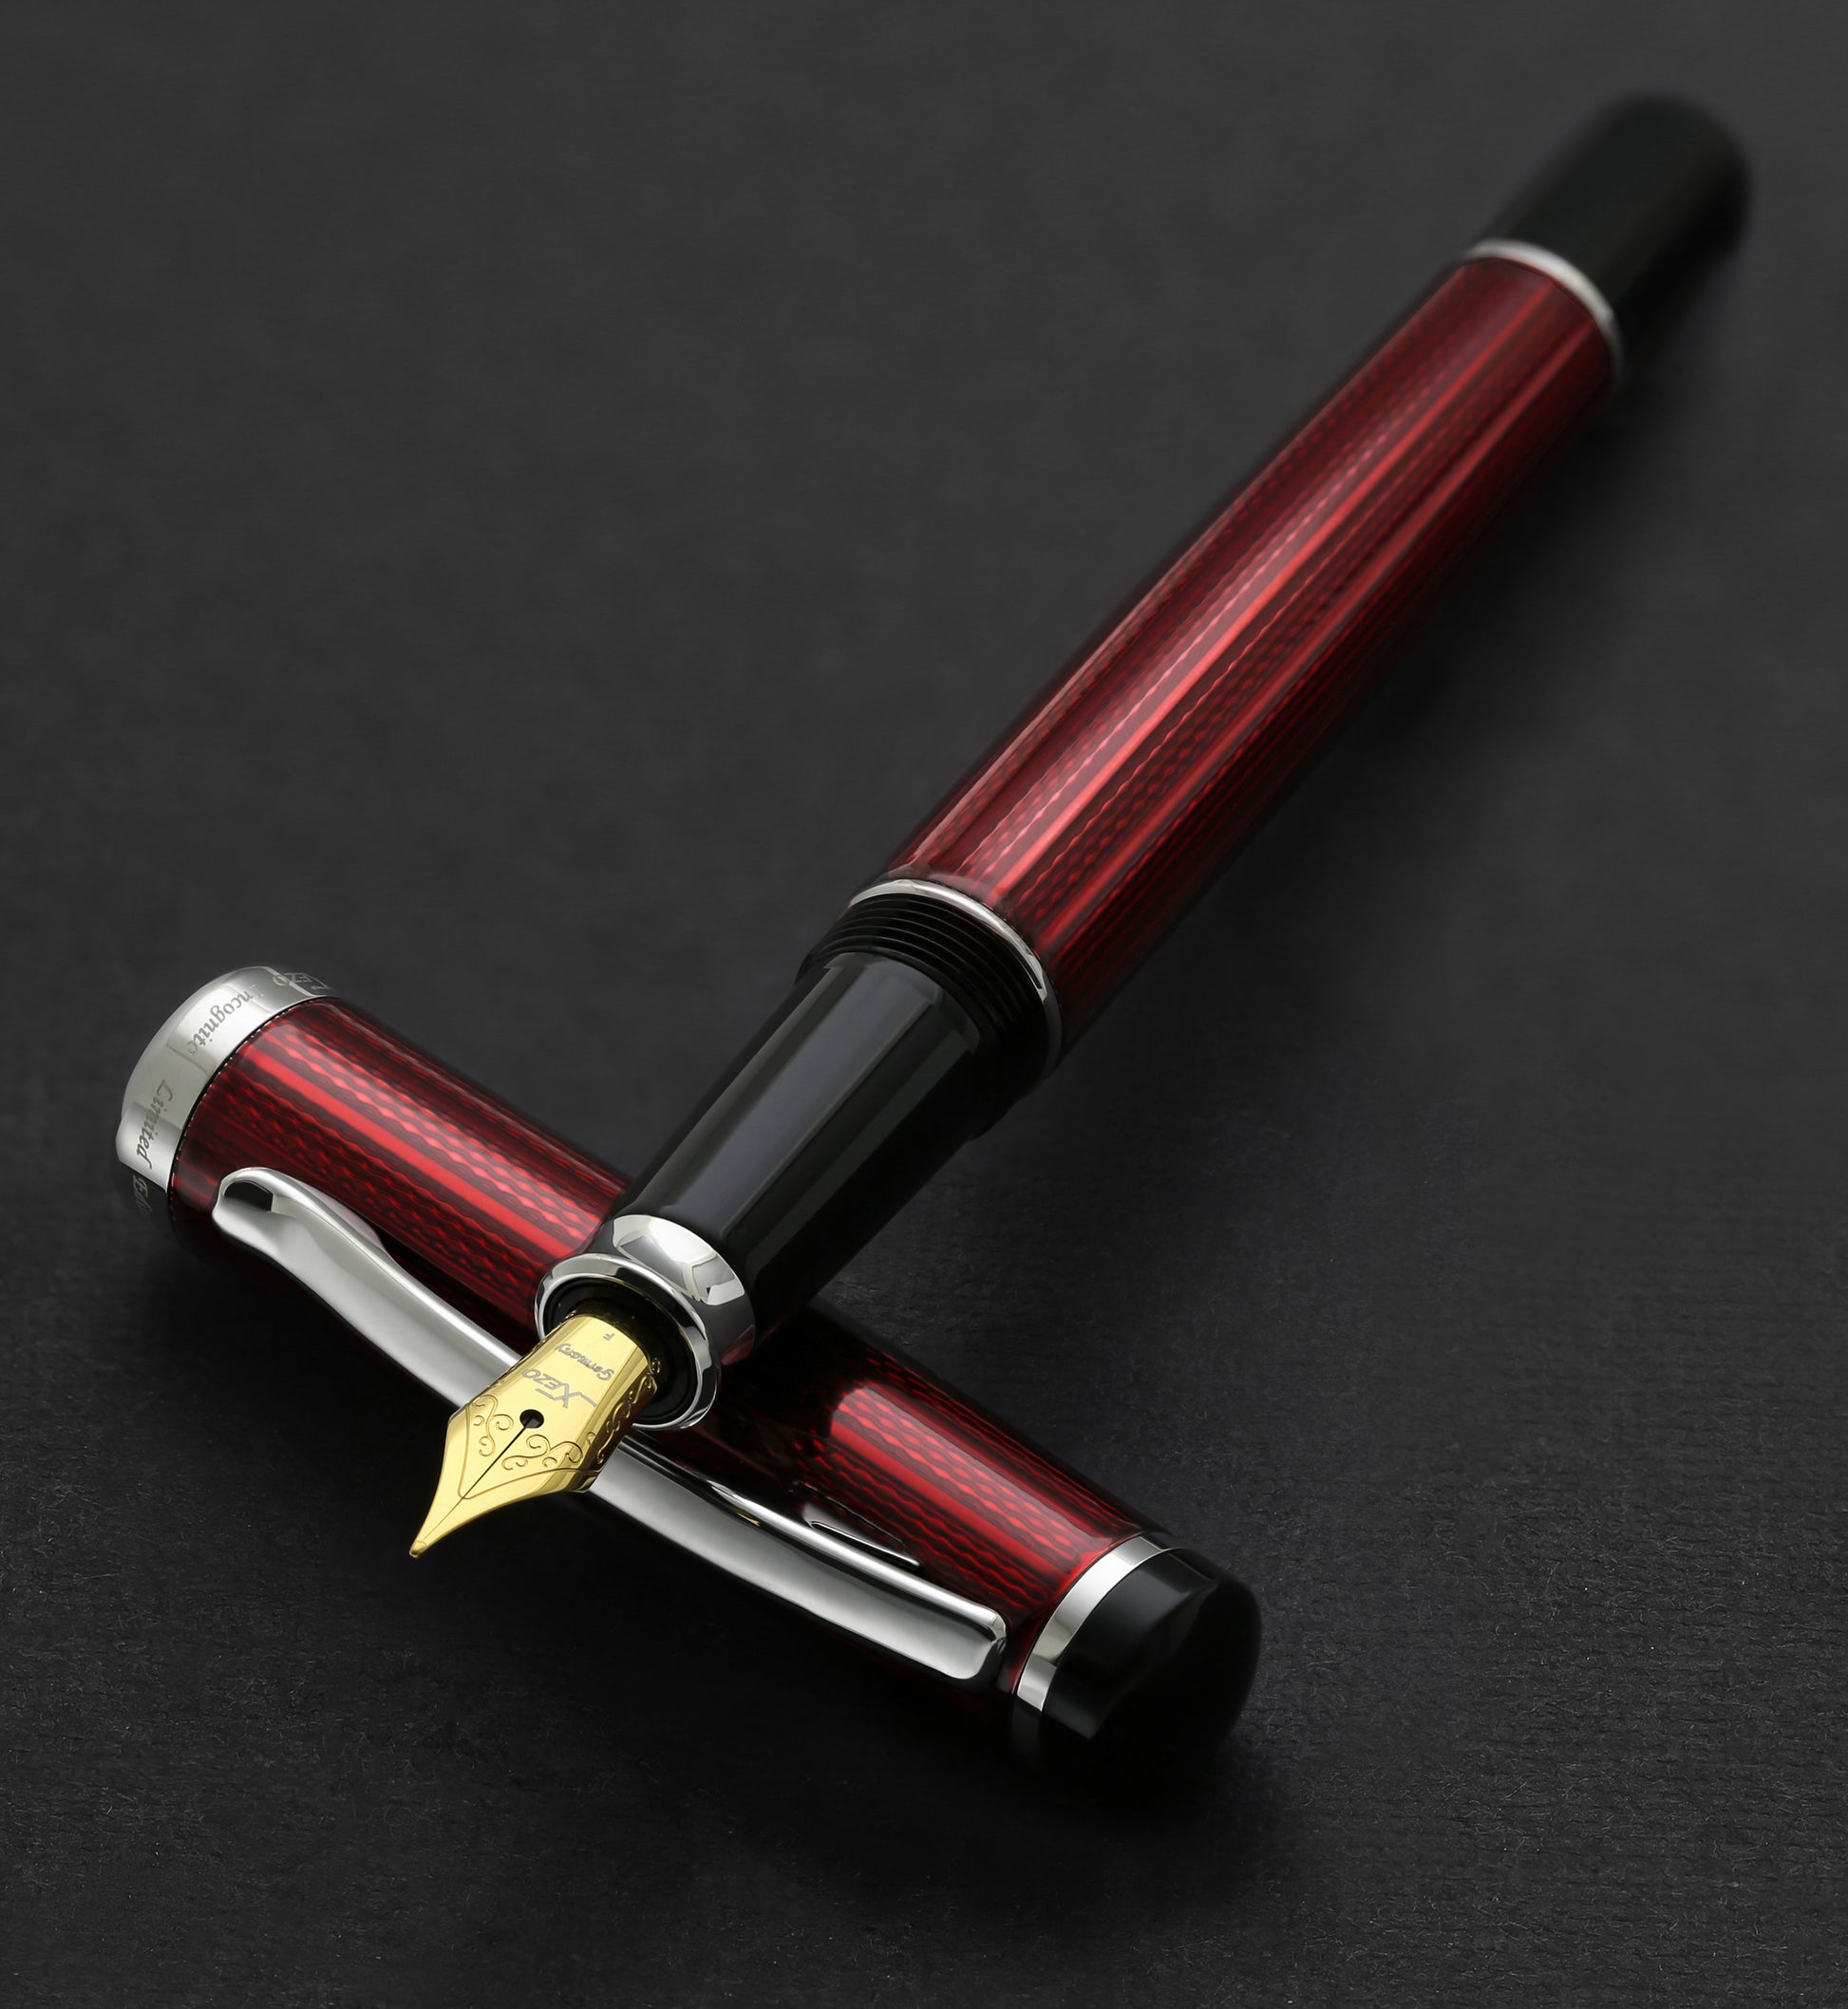 Xezo - Incognito Burgundy F-1 fountain pen resting on its cap